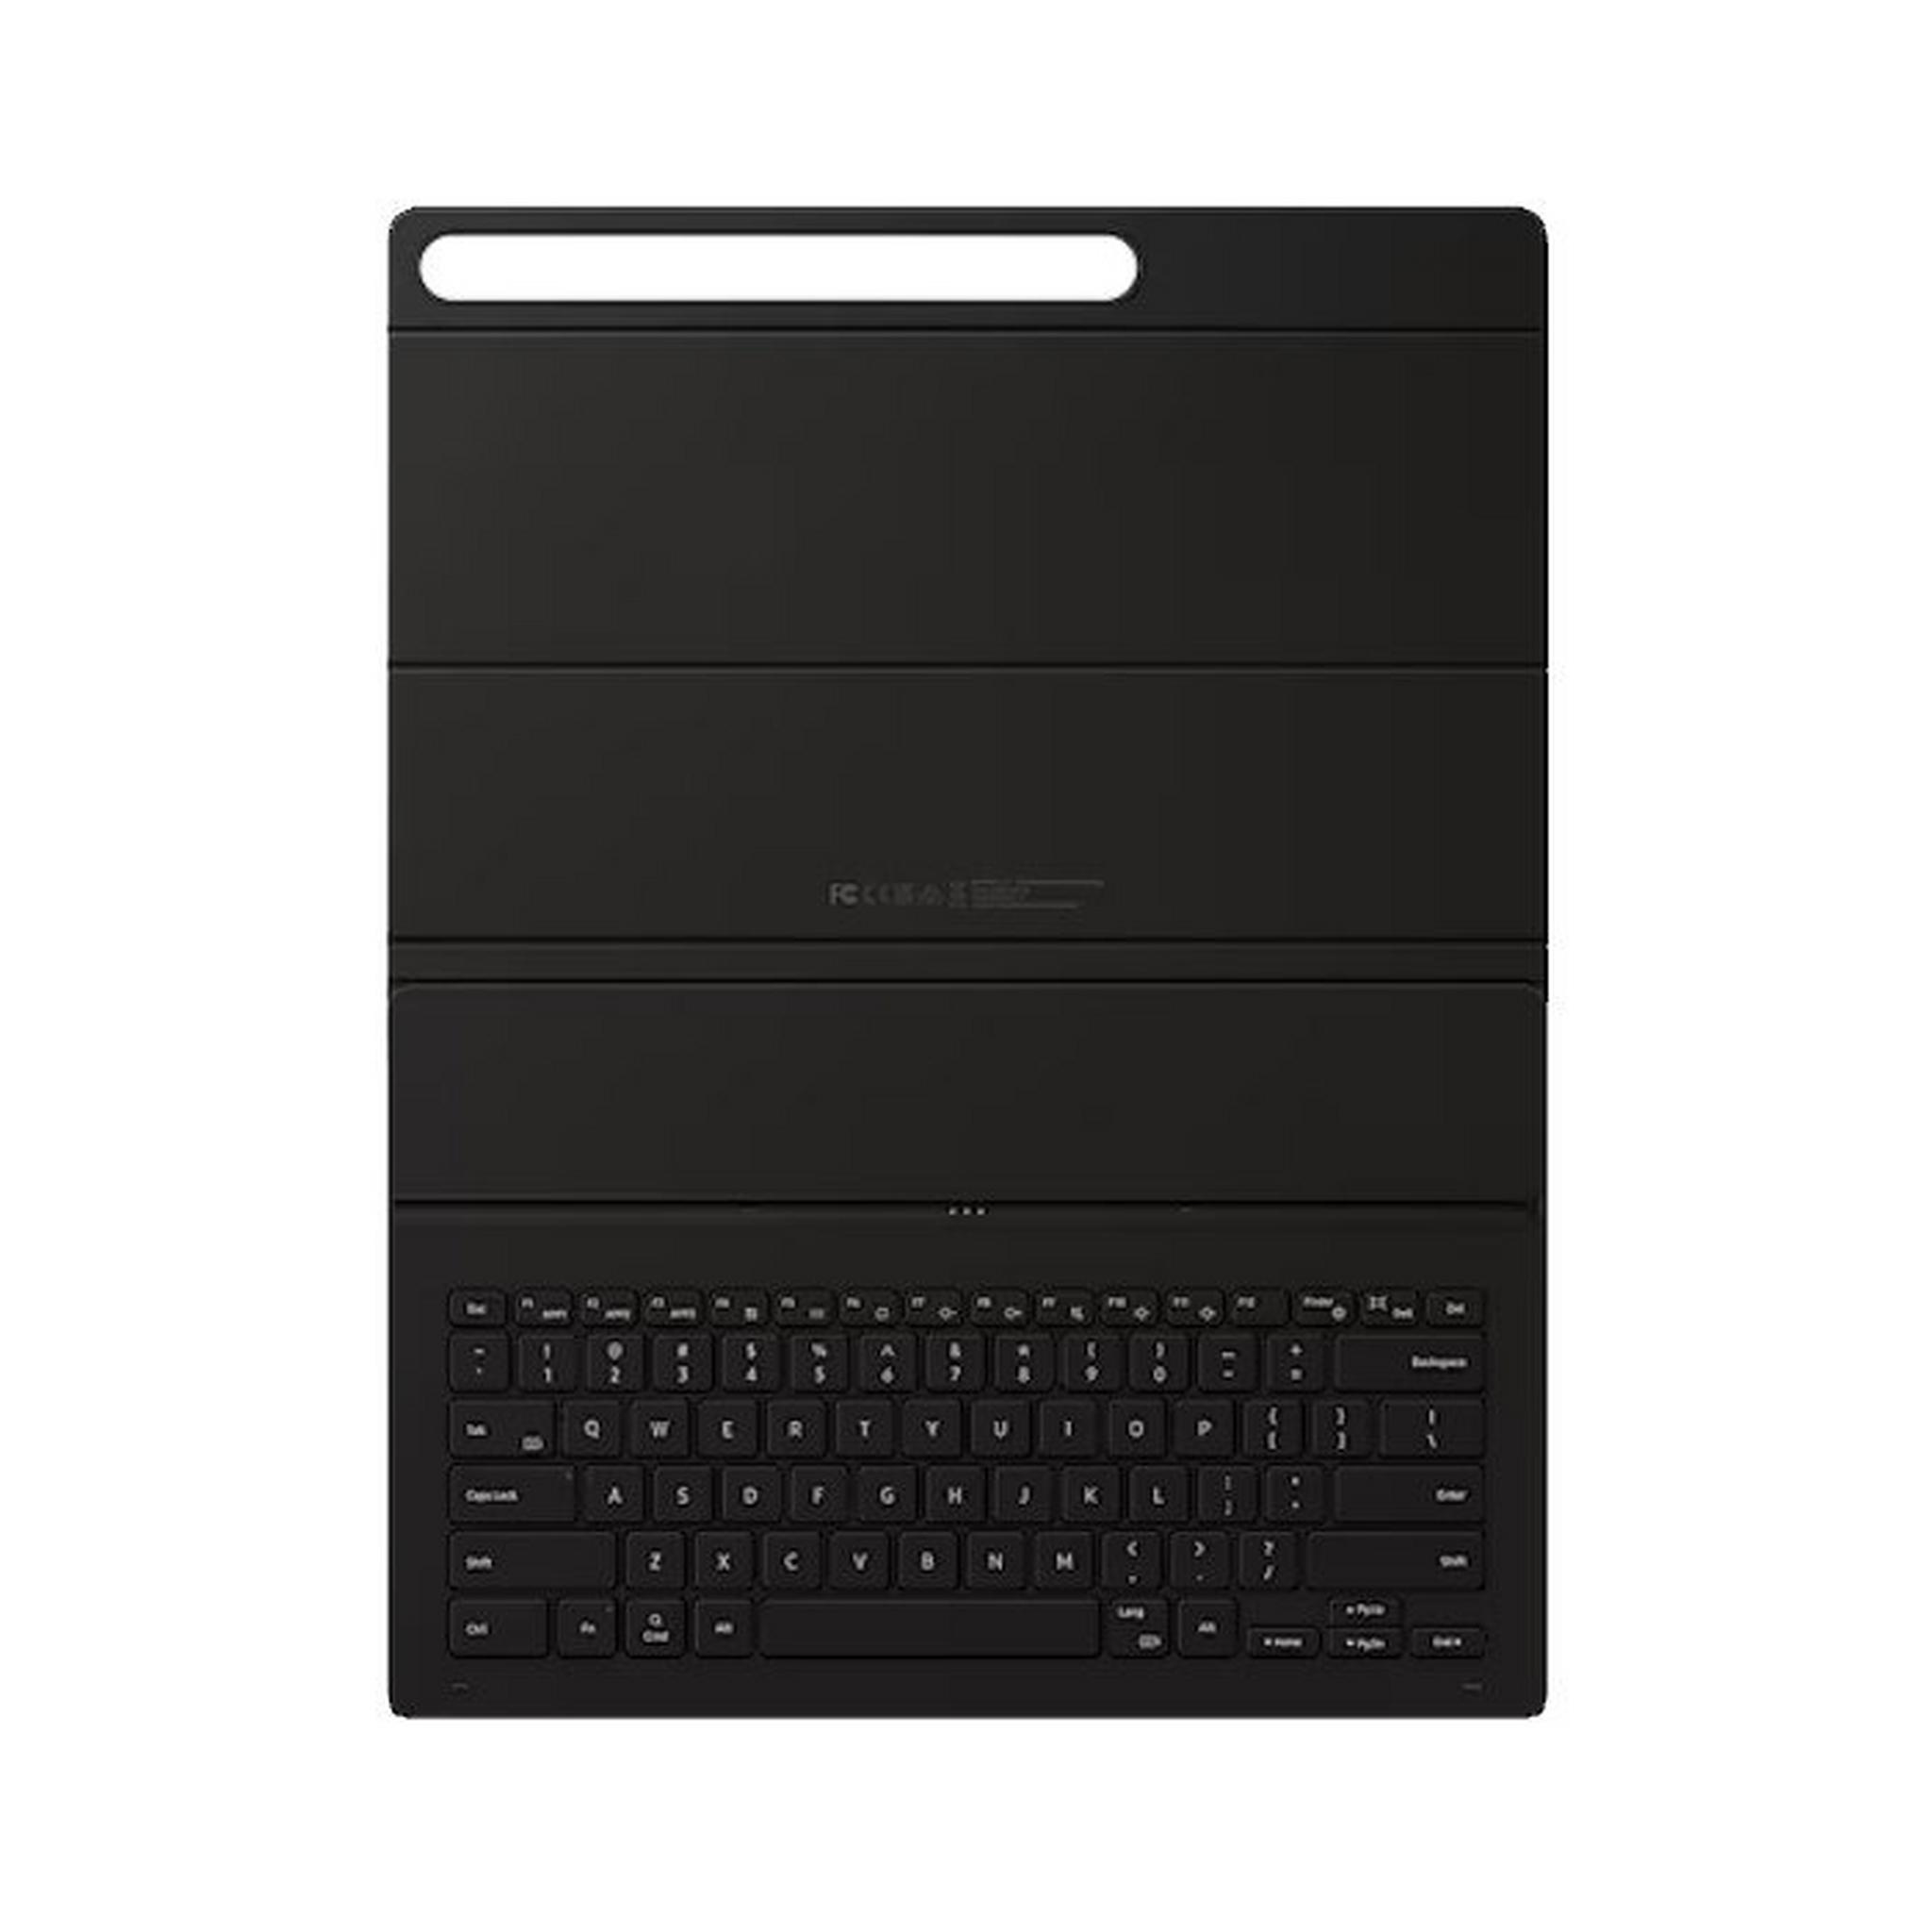 SAMSUNG Galaxy Tab S9 Ultra Book Cover Slim Keyboard, EF-DX910UBEGAE - Black